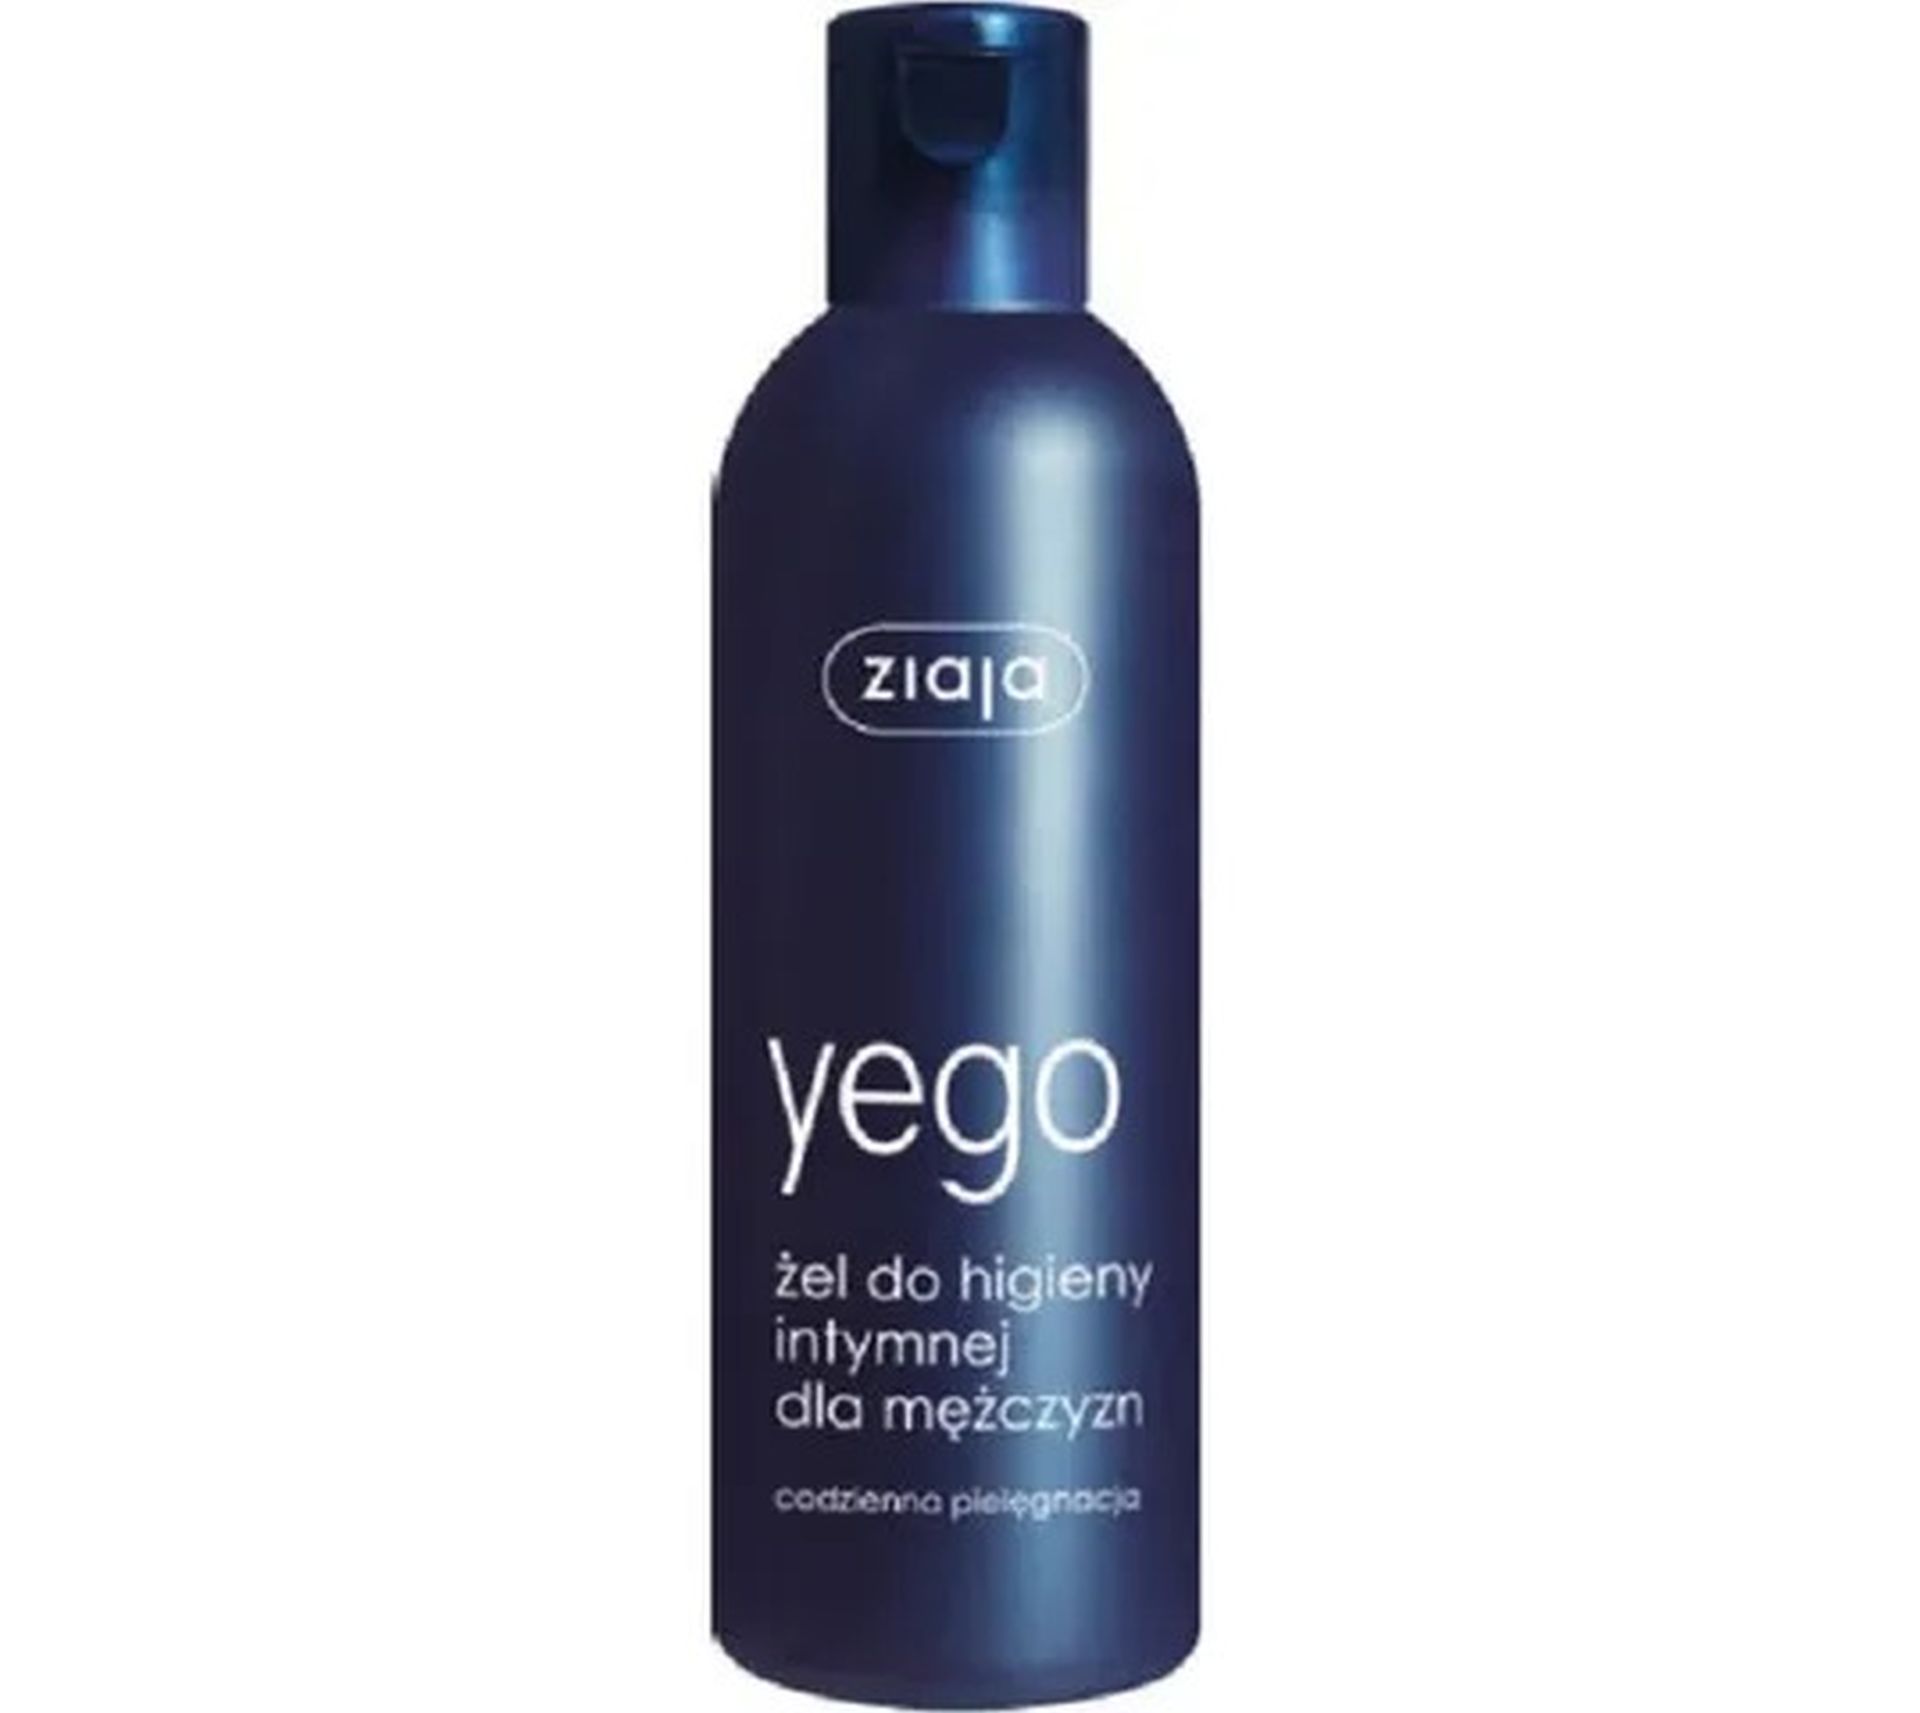 Ziaja Yego żel do higieny intymnej (300 ml)